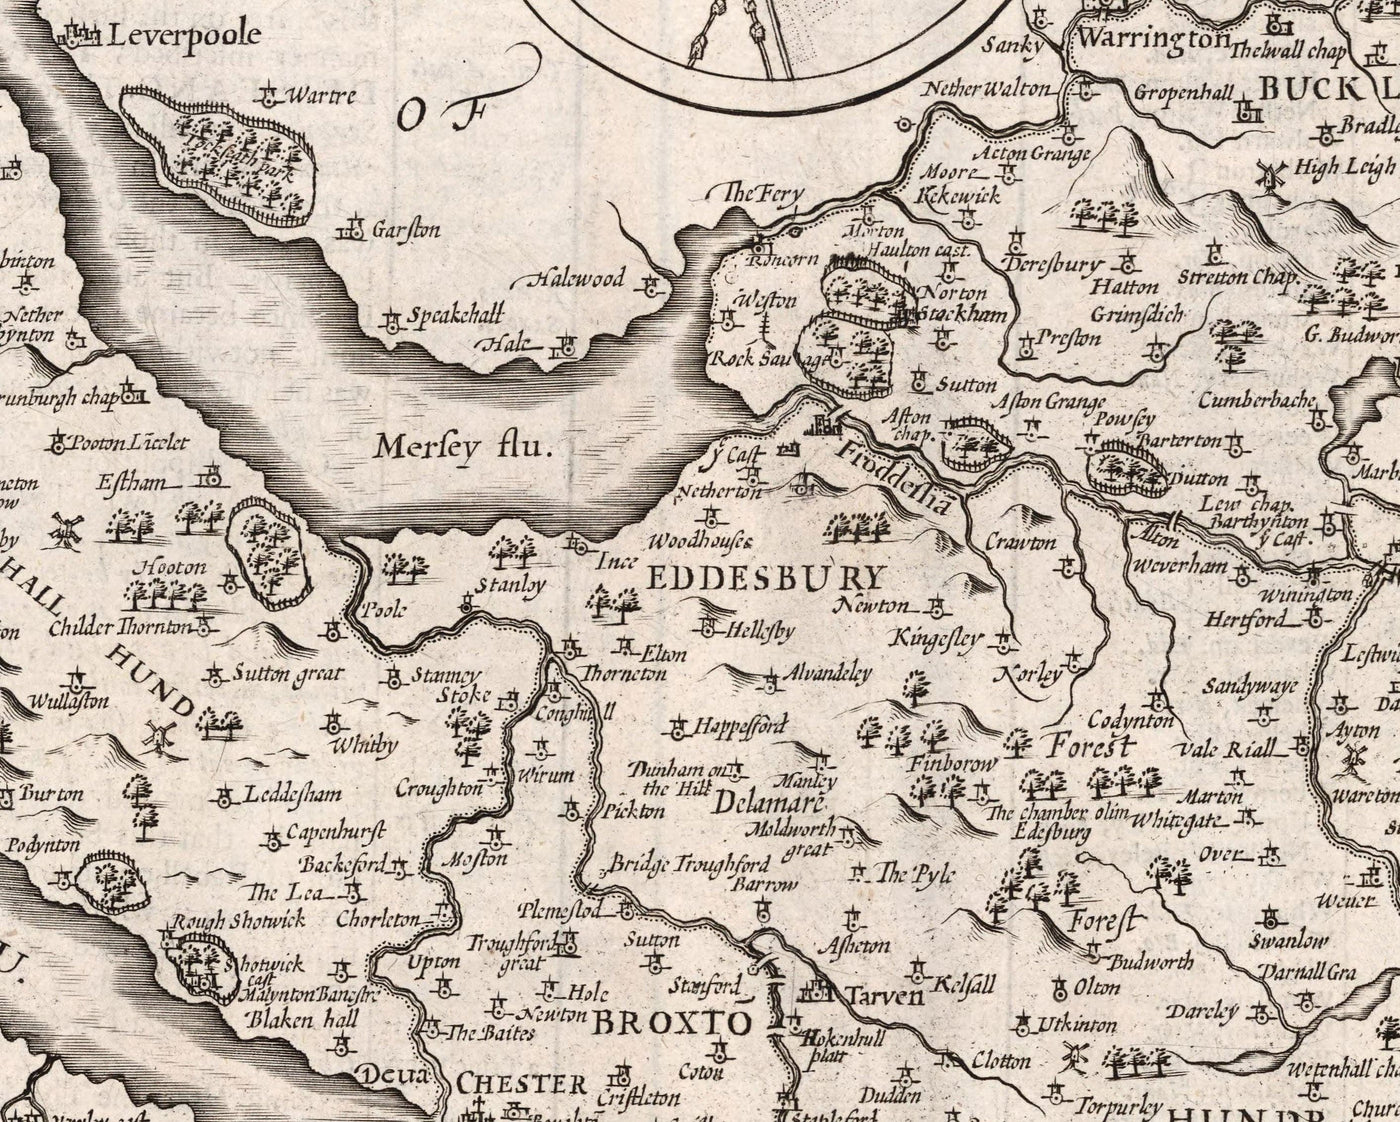 Alte monochrome Karte von Cheshire im Jahre 1611 - Chester, Warrington, Crewe, Runcorn, Liverpool, Merseyside